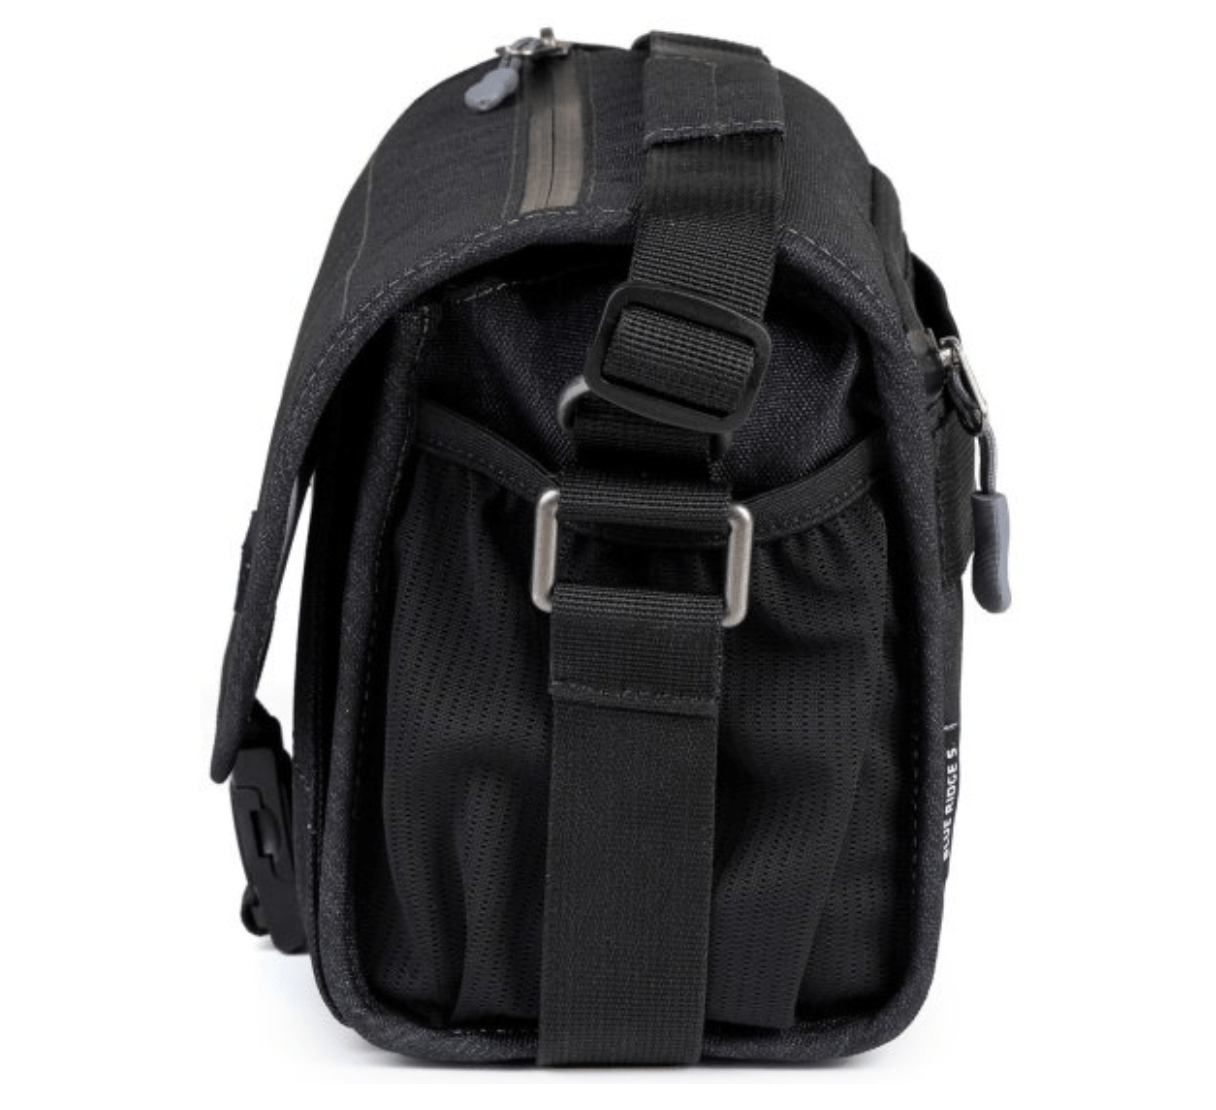 Promaster Blue Ridge Small Shoulder Bag (3.1L Green) - B&C Camera